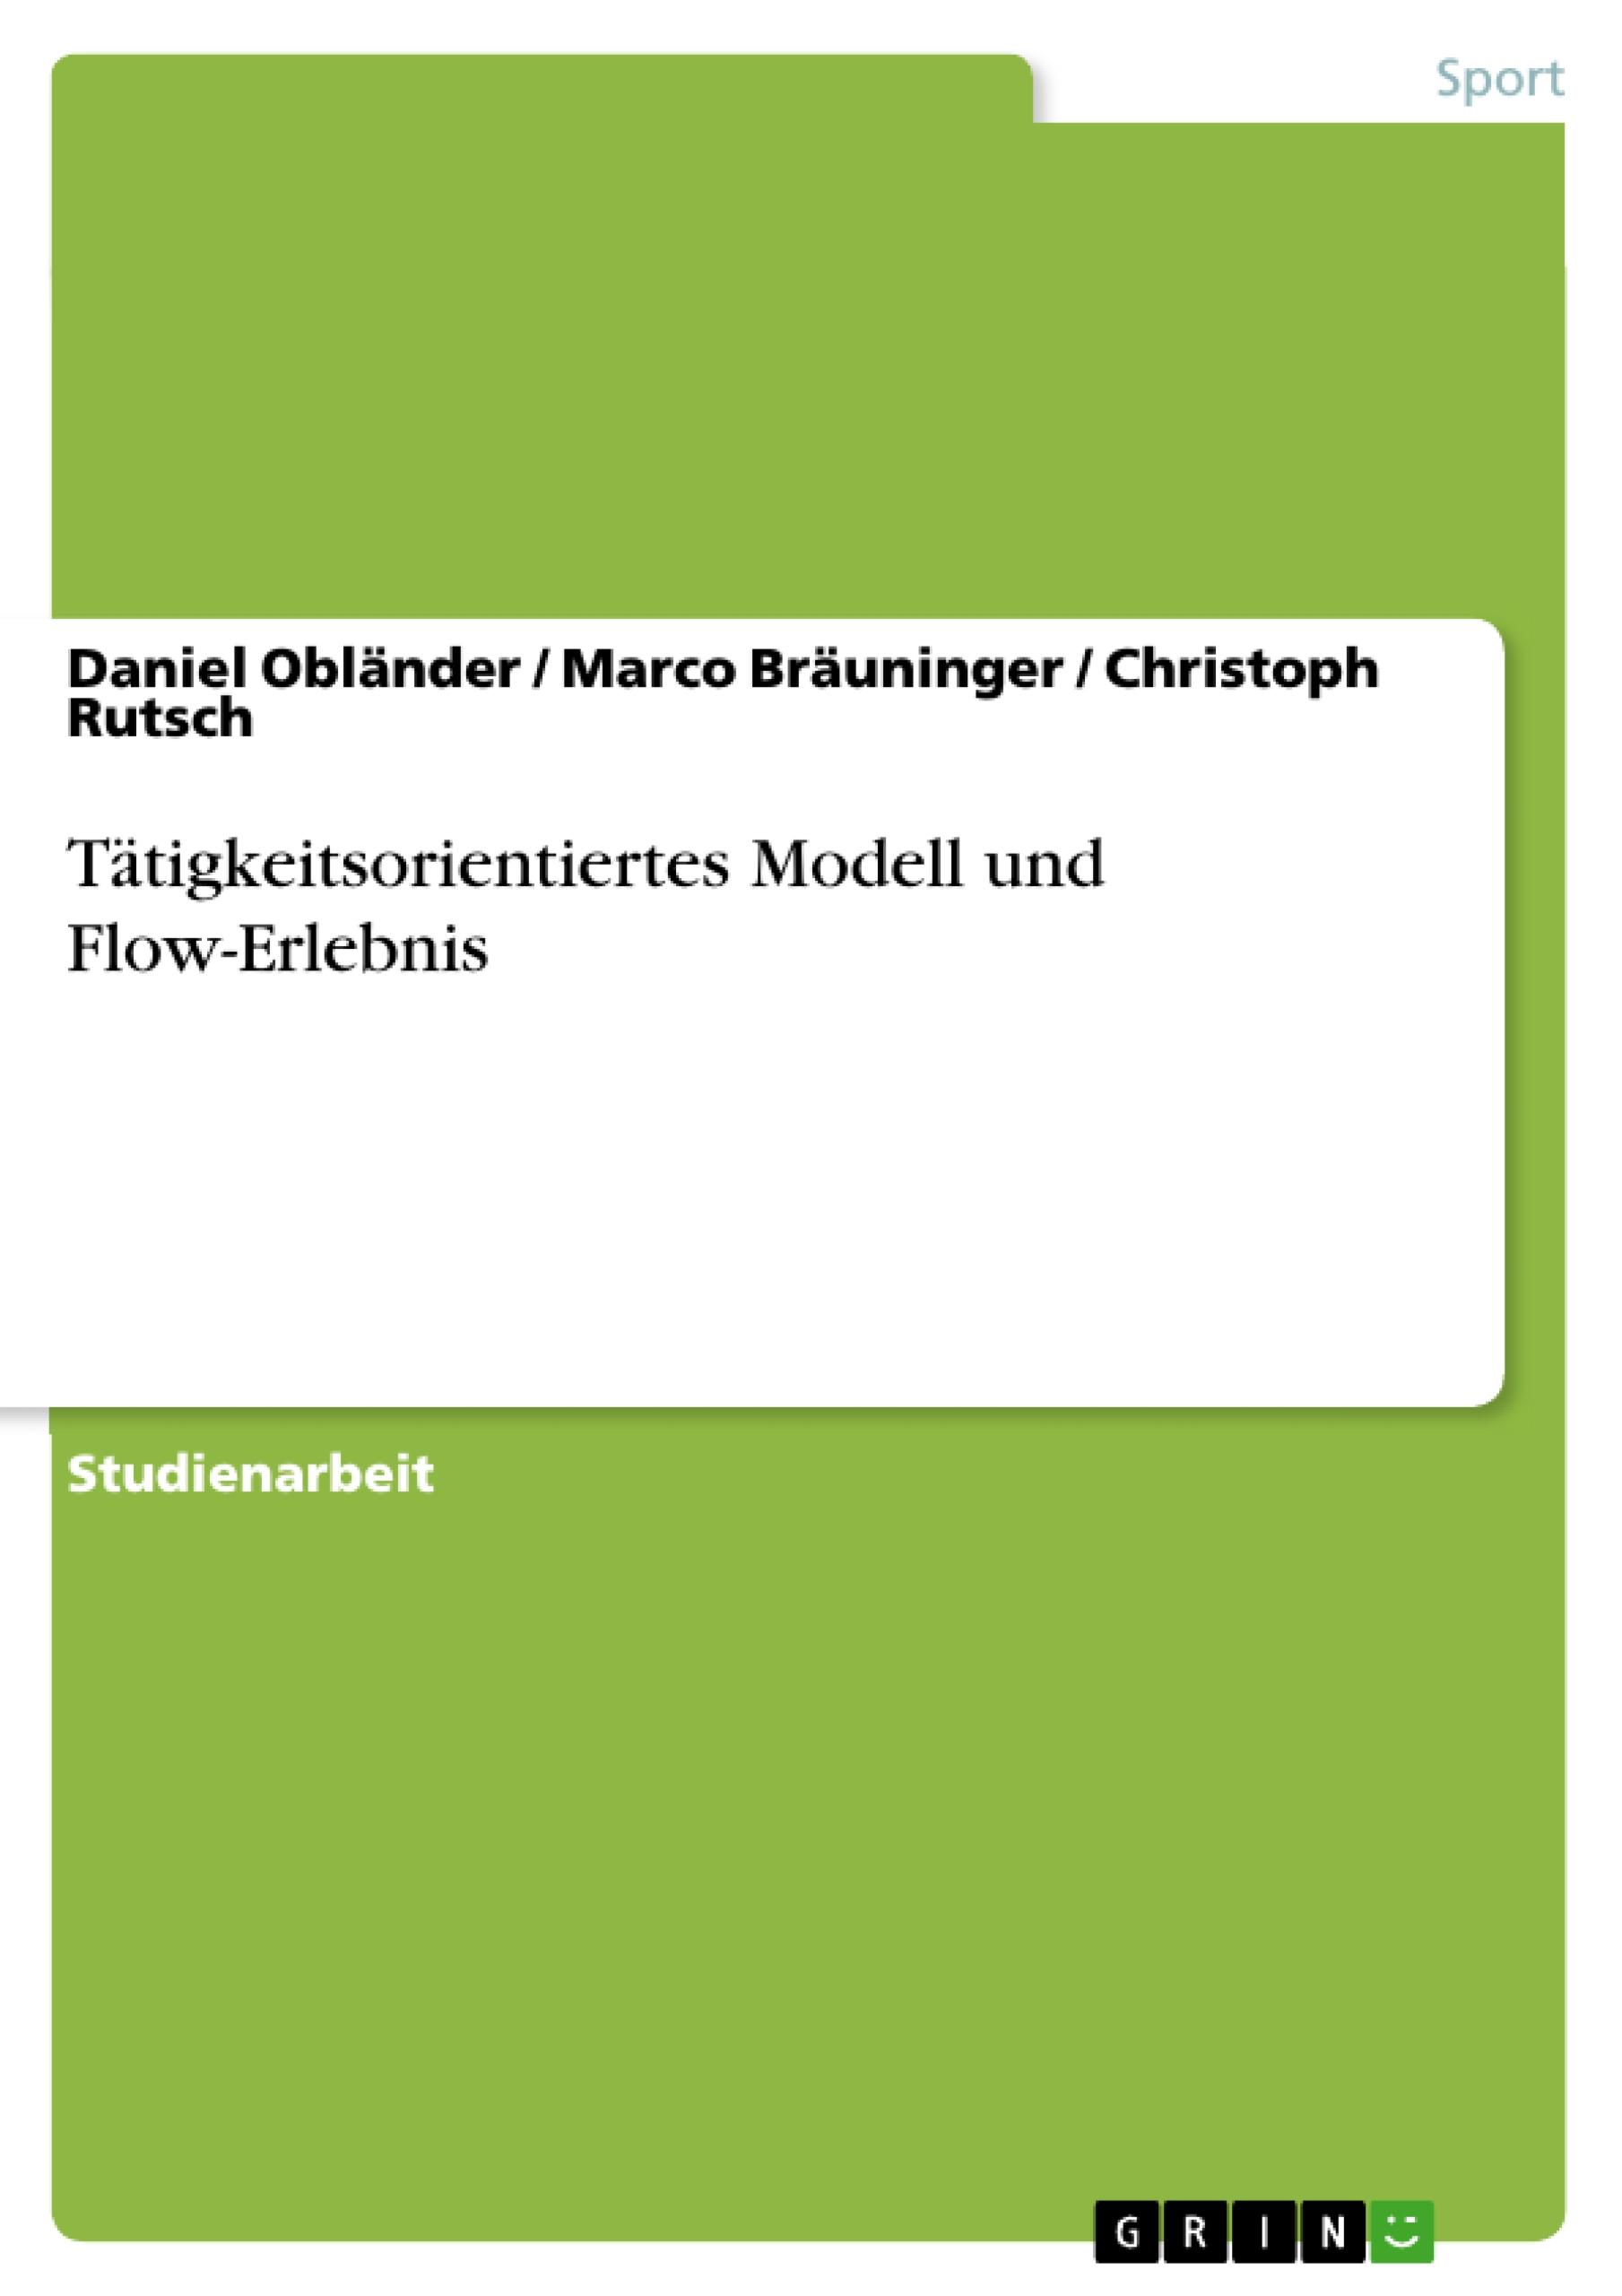 Taetigkeitsorientiertes Modell und Flow-Erlebnis - OblÃ¤nder, Daniel|BrÃ¤uninger, Marco|Rutsch, Christoph